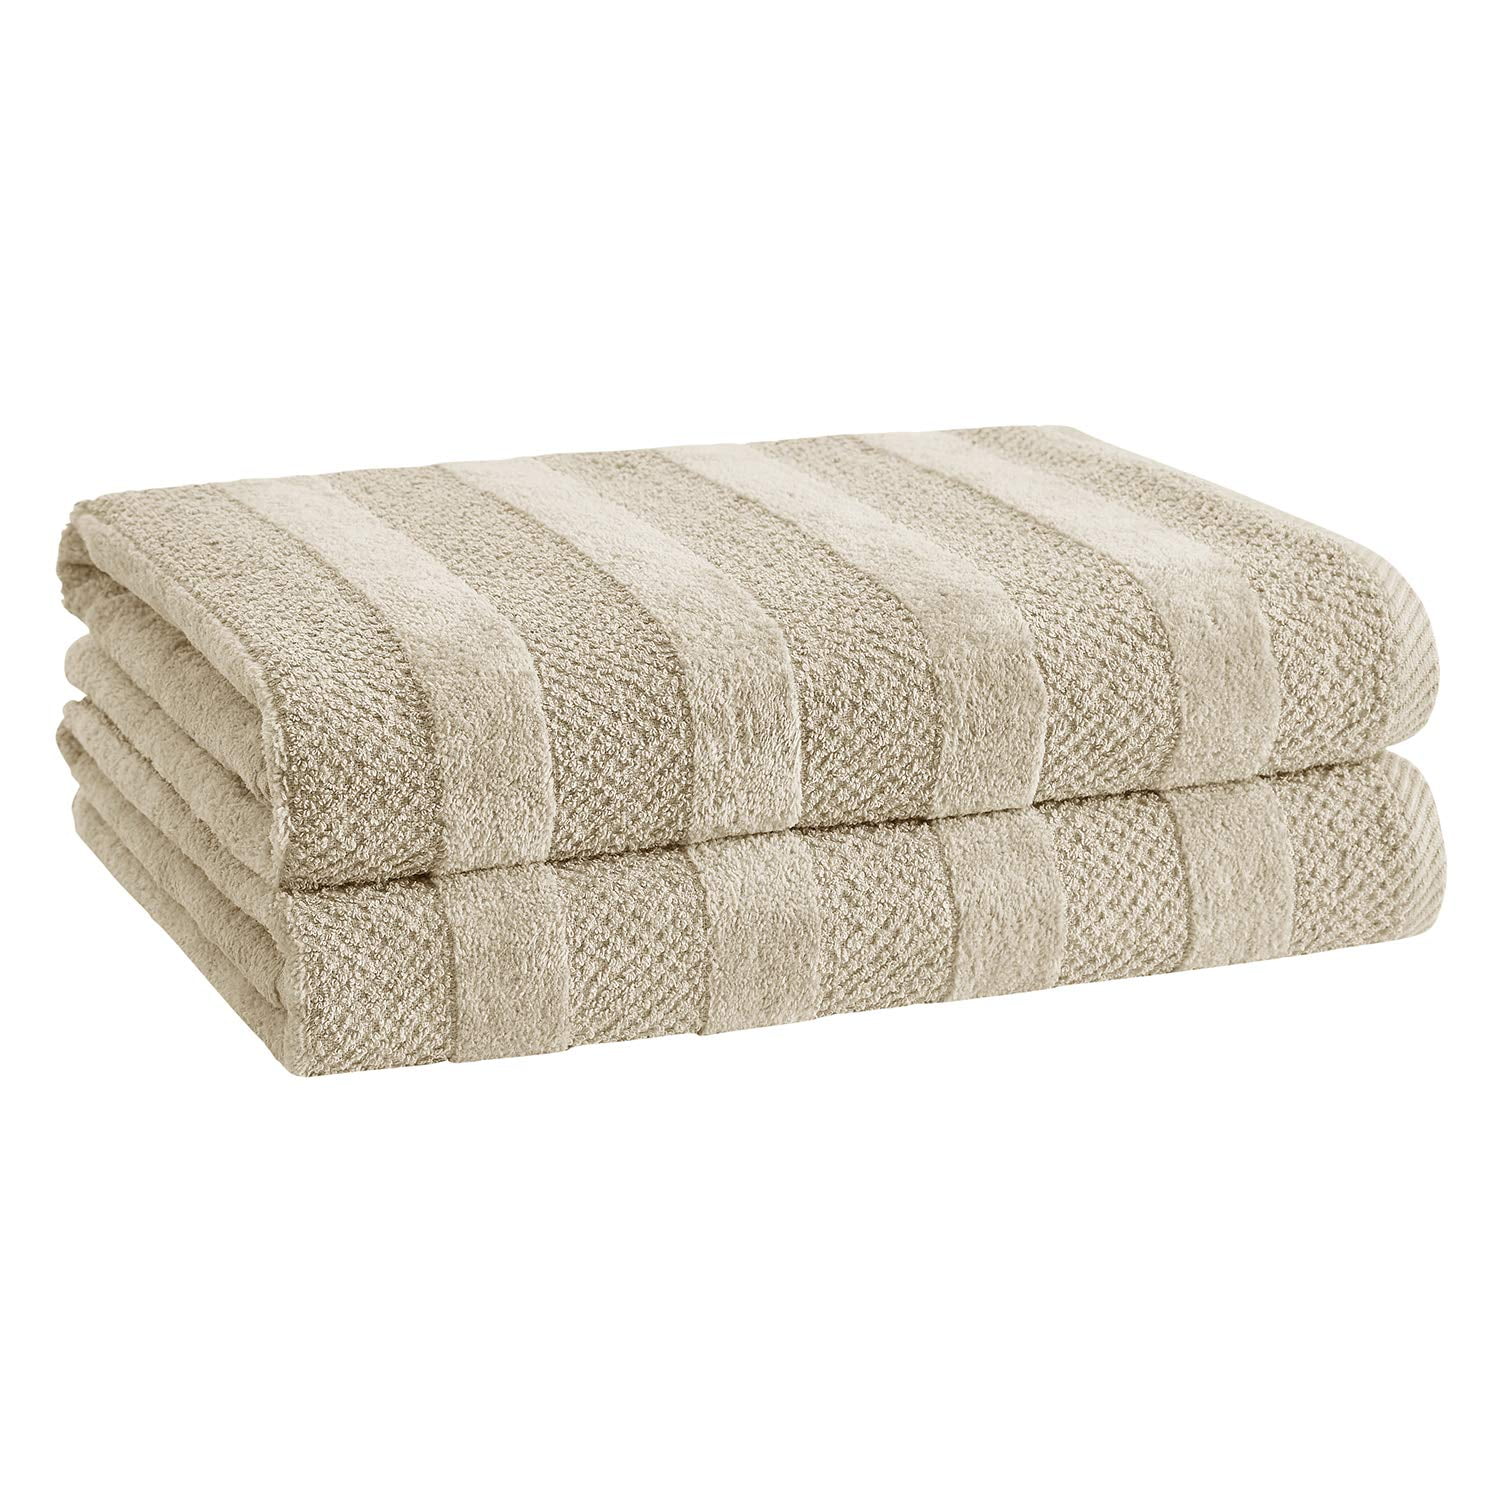 Louis Vuitton Beach Towel Bath Towel Damier White Cream Ivory